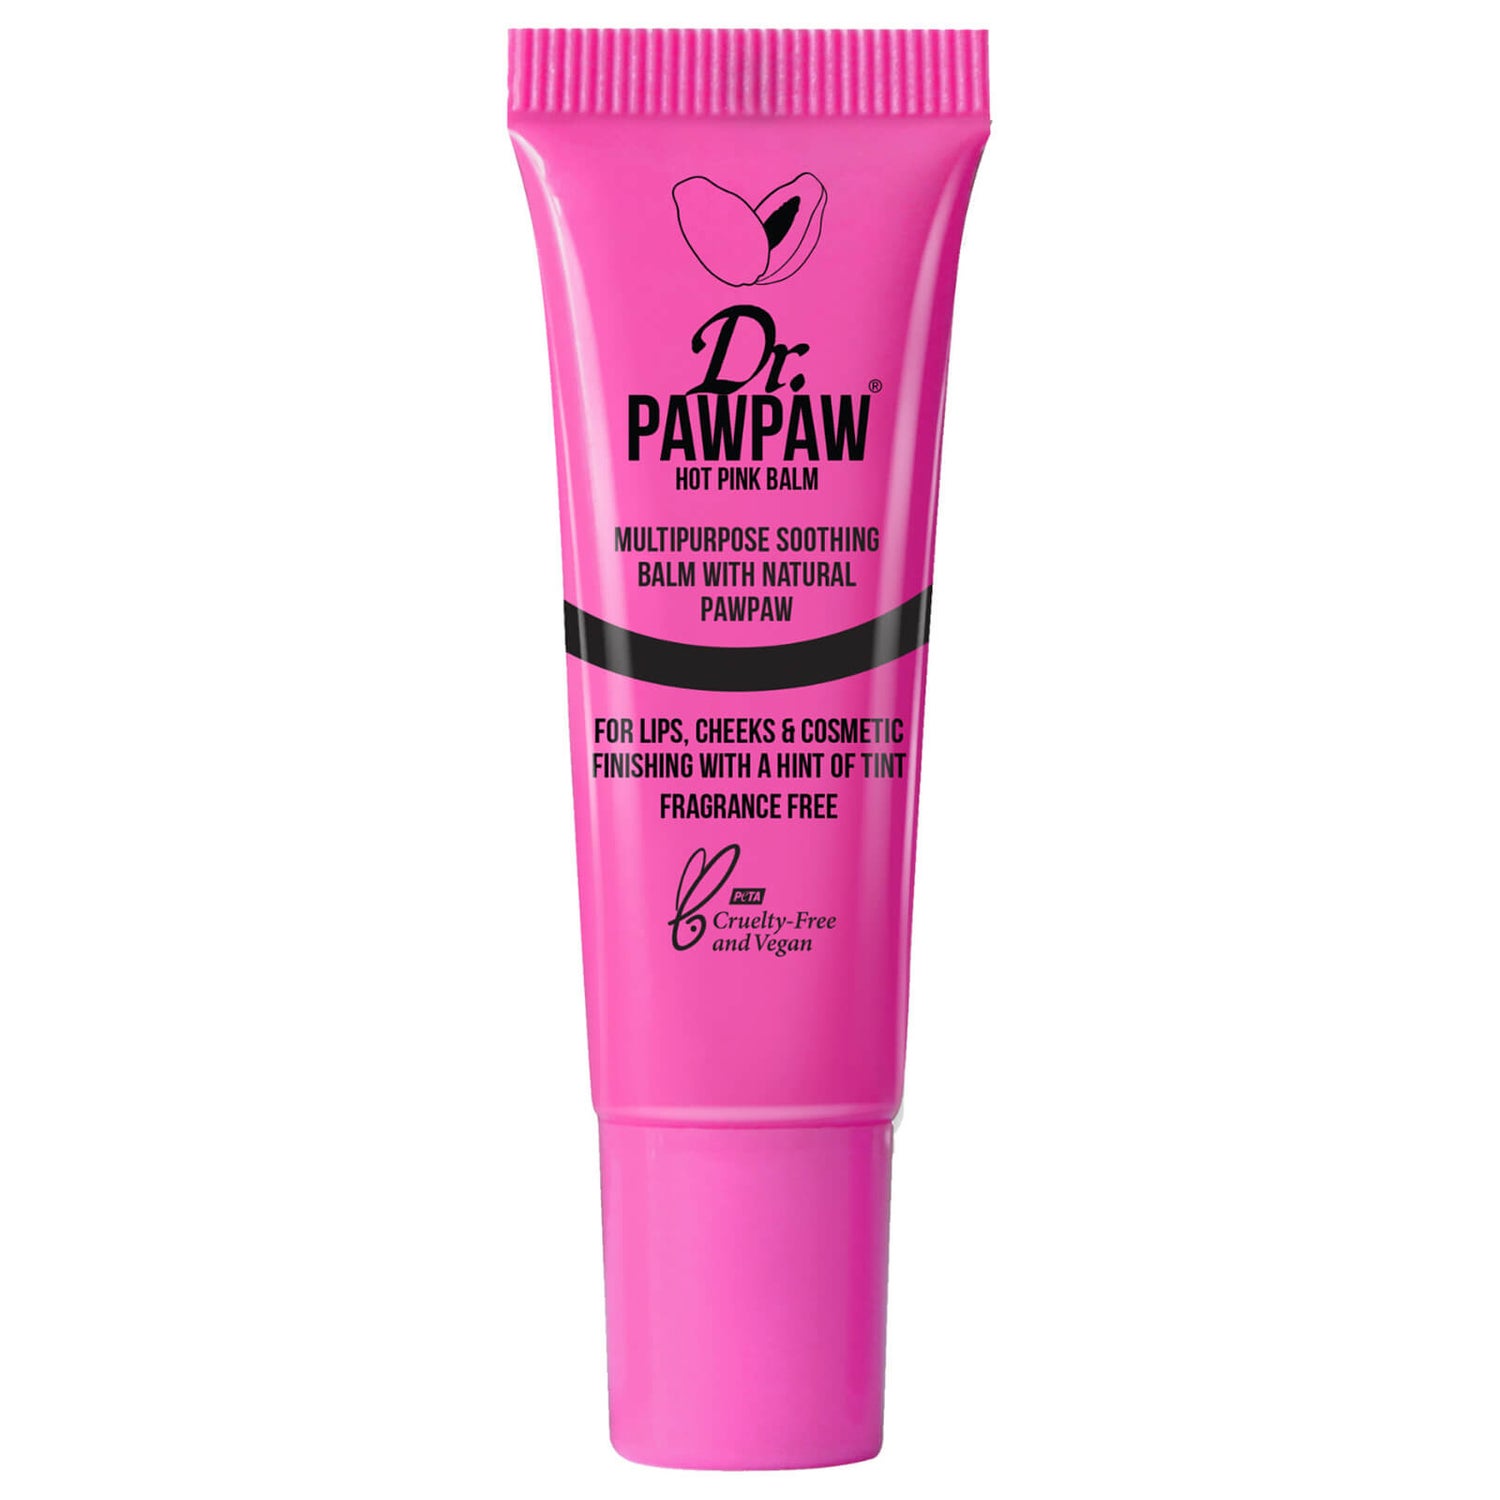 Dr. PAWPAW Multipurpose Tinted Hot Pink Balm 10ml